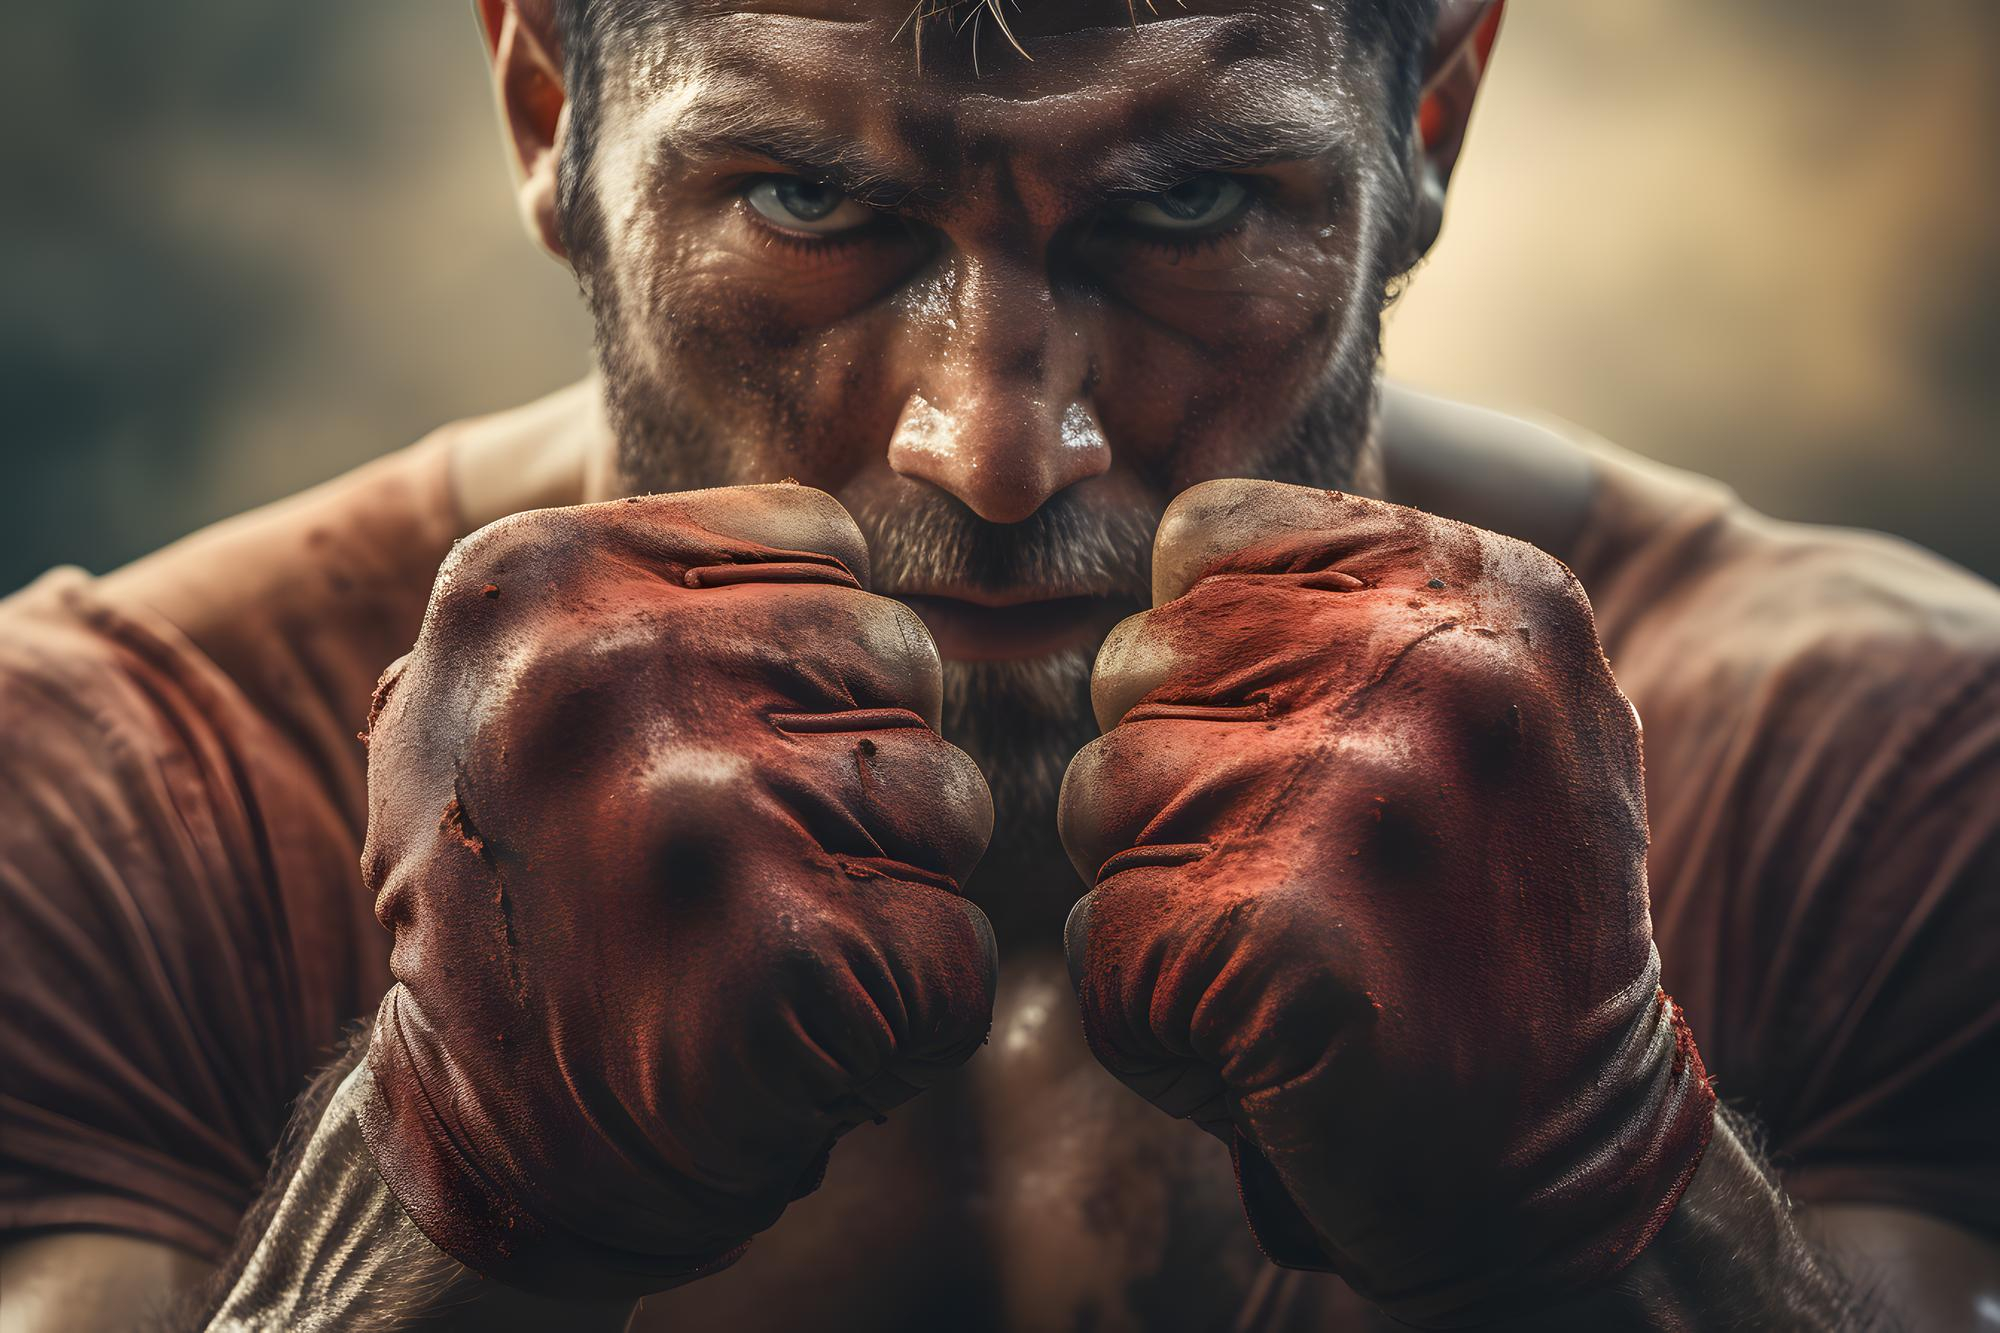 Fighter's Mindset: Mentale voorbereiding in de vechtsport